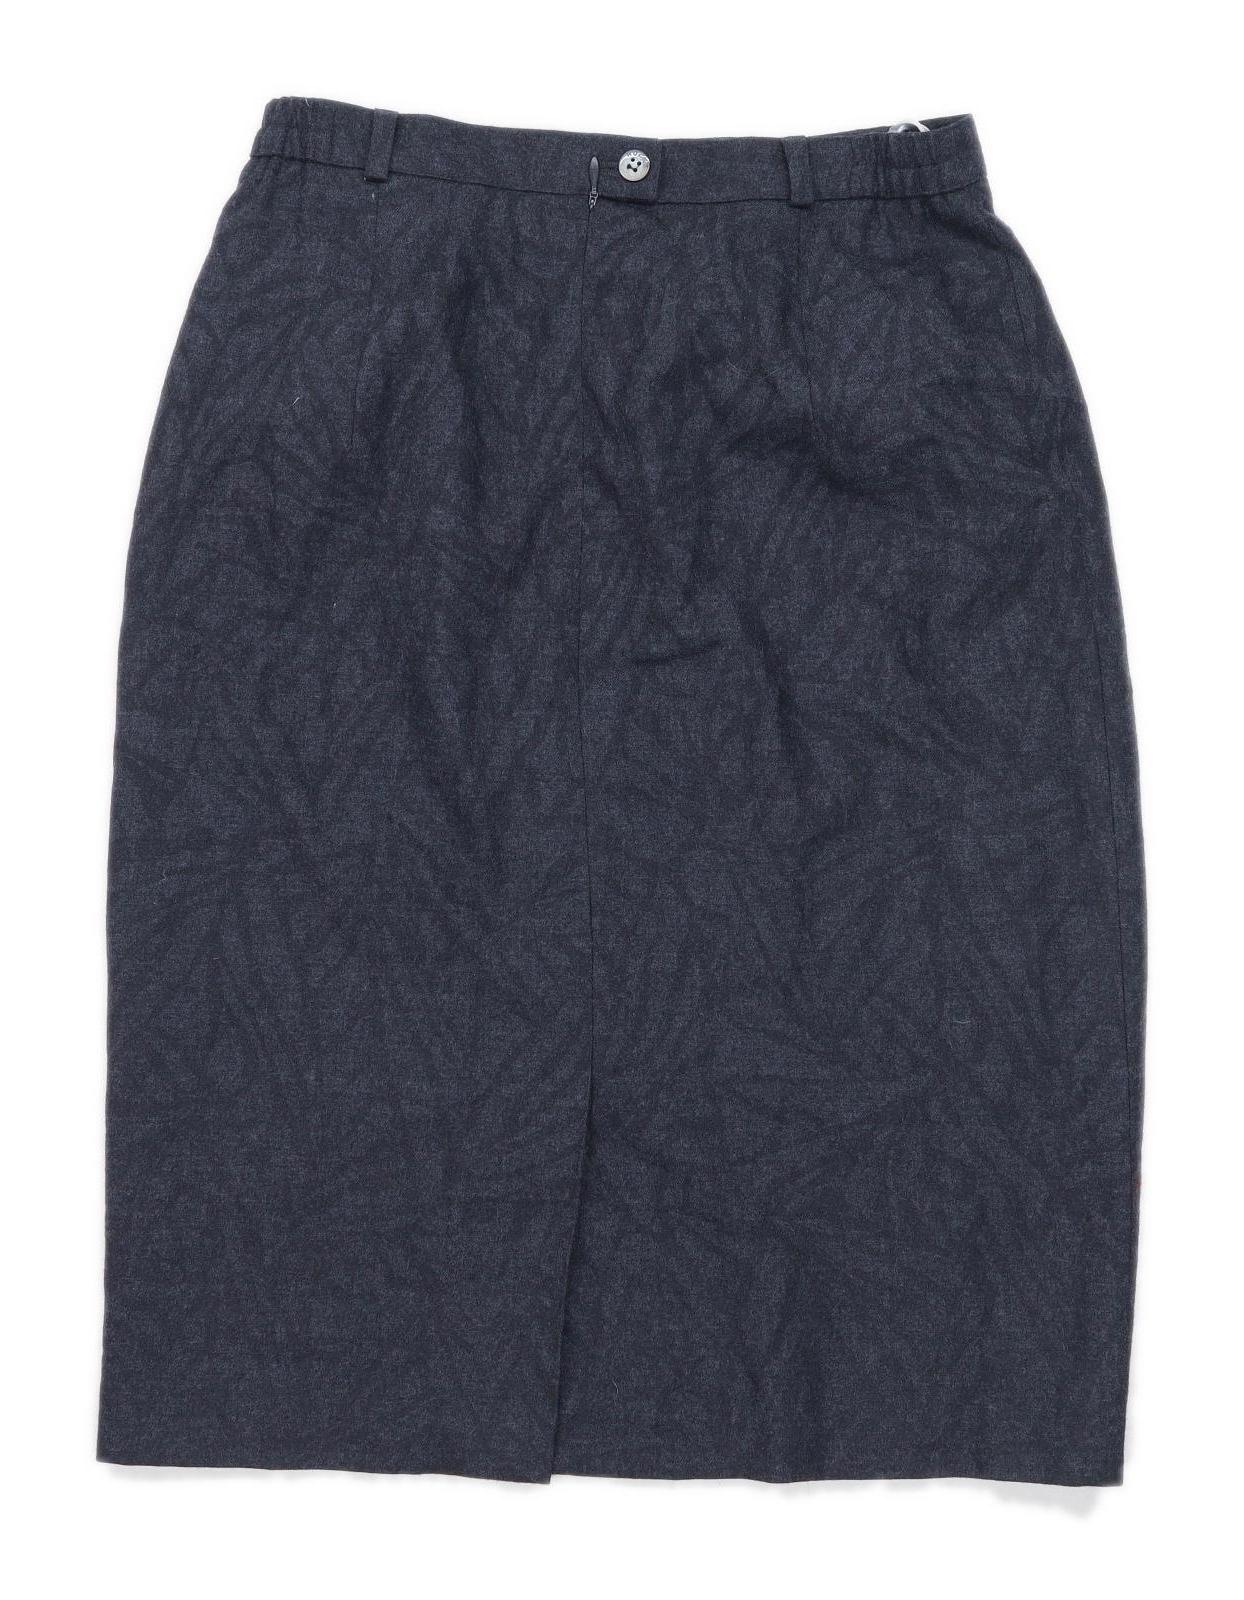 Hucke Womens Size 10 Wool Blend Grey Skirt (Regular)